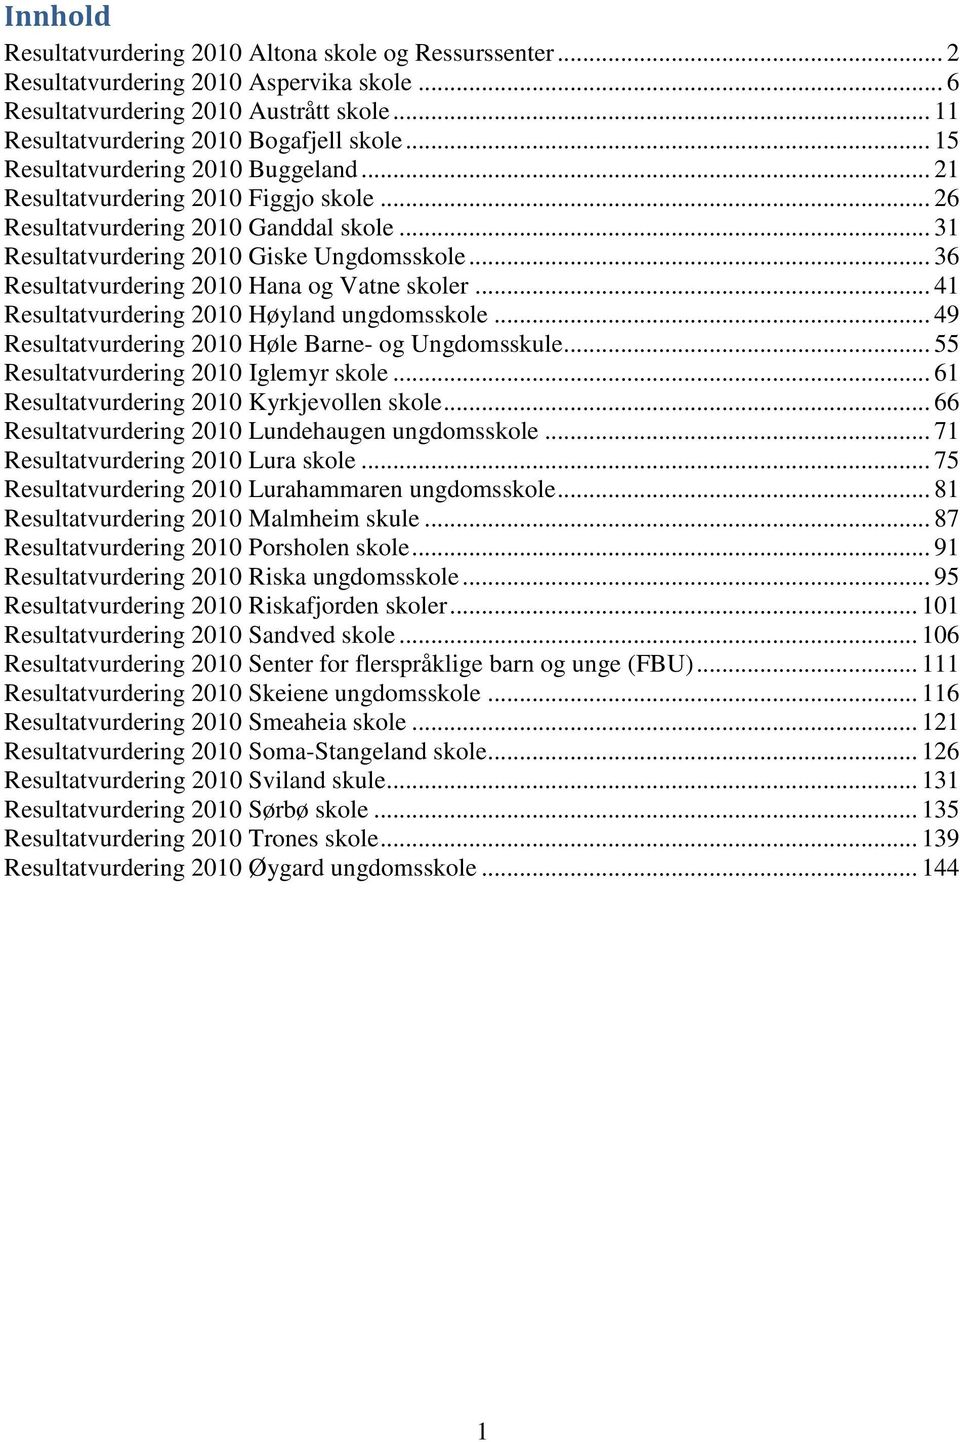 .. 36 Resultatvurdering 2010 Hana og Vatne skoler... 41 Resultatvurdering 2010 Høyland ungdomsskole... 49 Resultatvurdering 2010 Høle Barne- og Ungdomsskule... 55 Resultatvurdering 2010 Iglemyr skole.